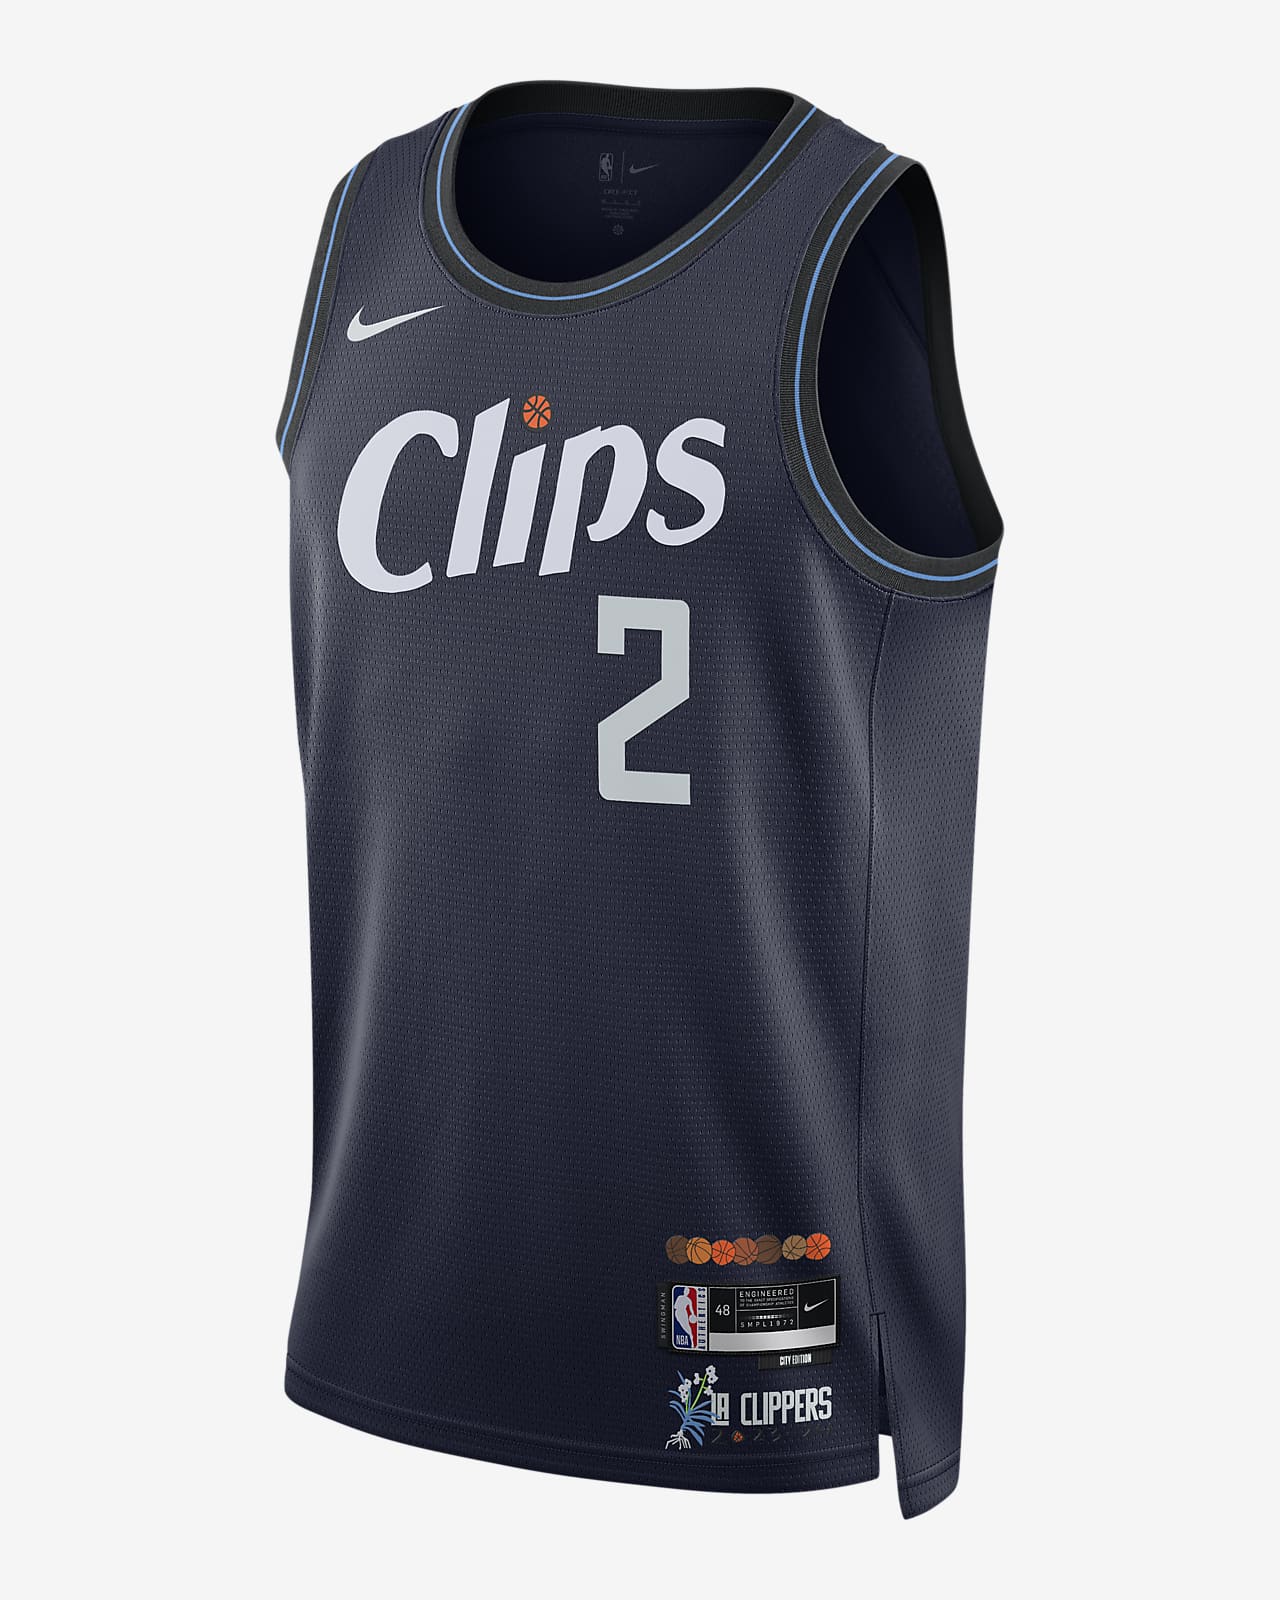 LA Clippers uniform